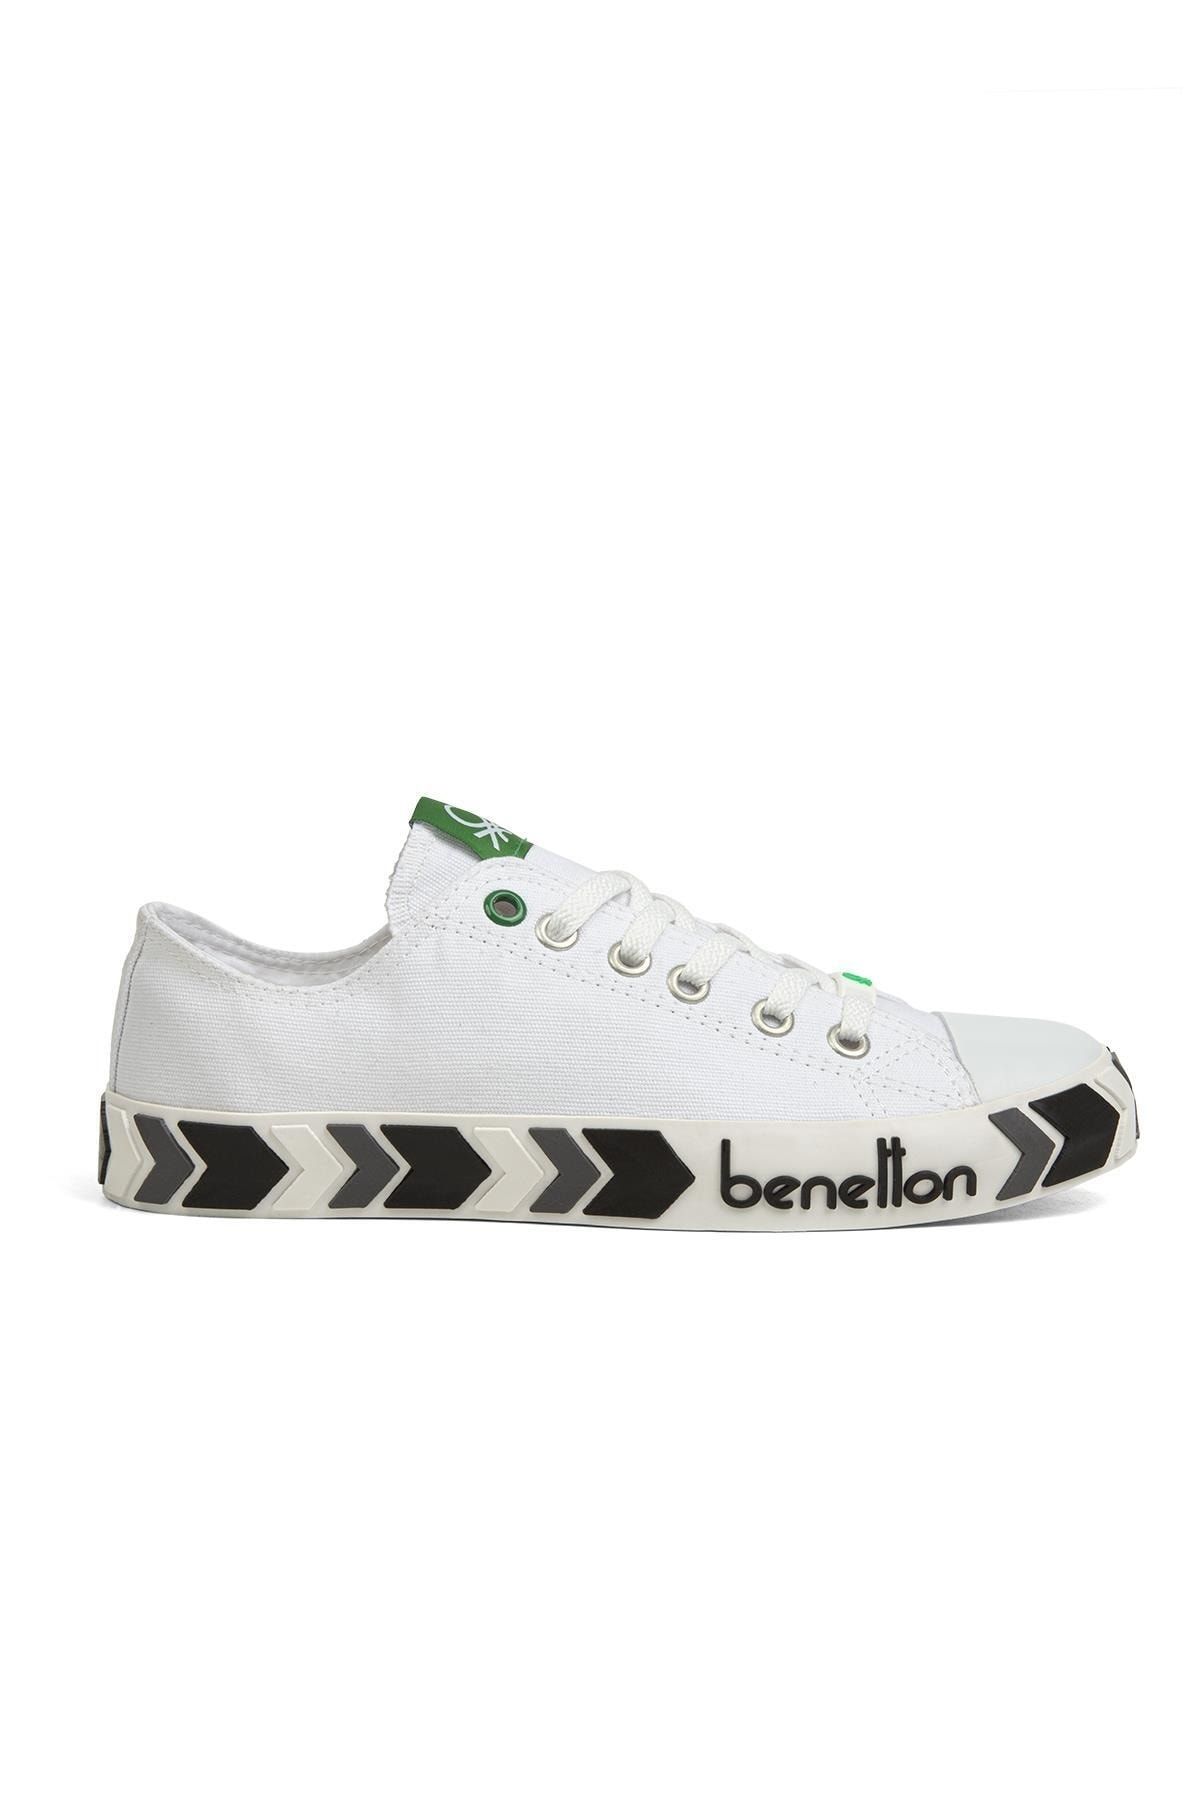 Benetton ® | Bn-30622-3374 Beyaz Siyah - Erkek Spor Ayakkabı